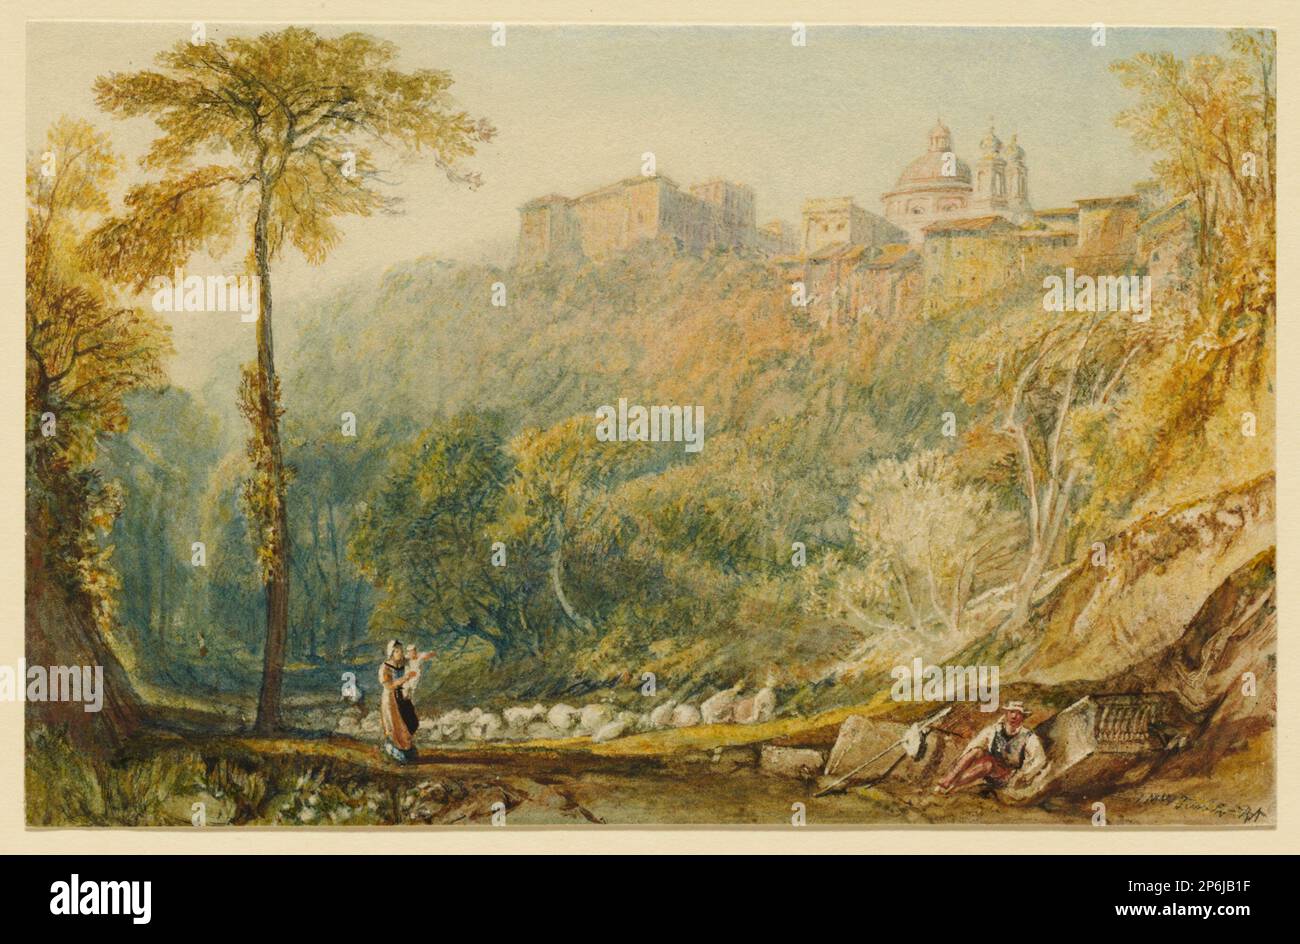 Joseph Mallord William Turner, View of La Riccia (Ariccia), 1817, watercolor and gouache, with scraping, on cream wove paper. Stock Photo